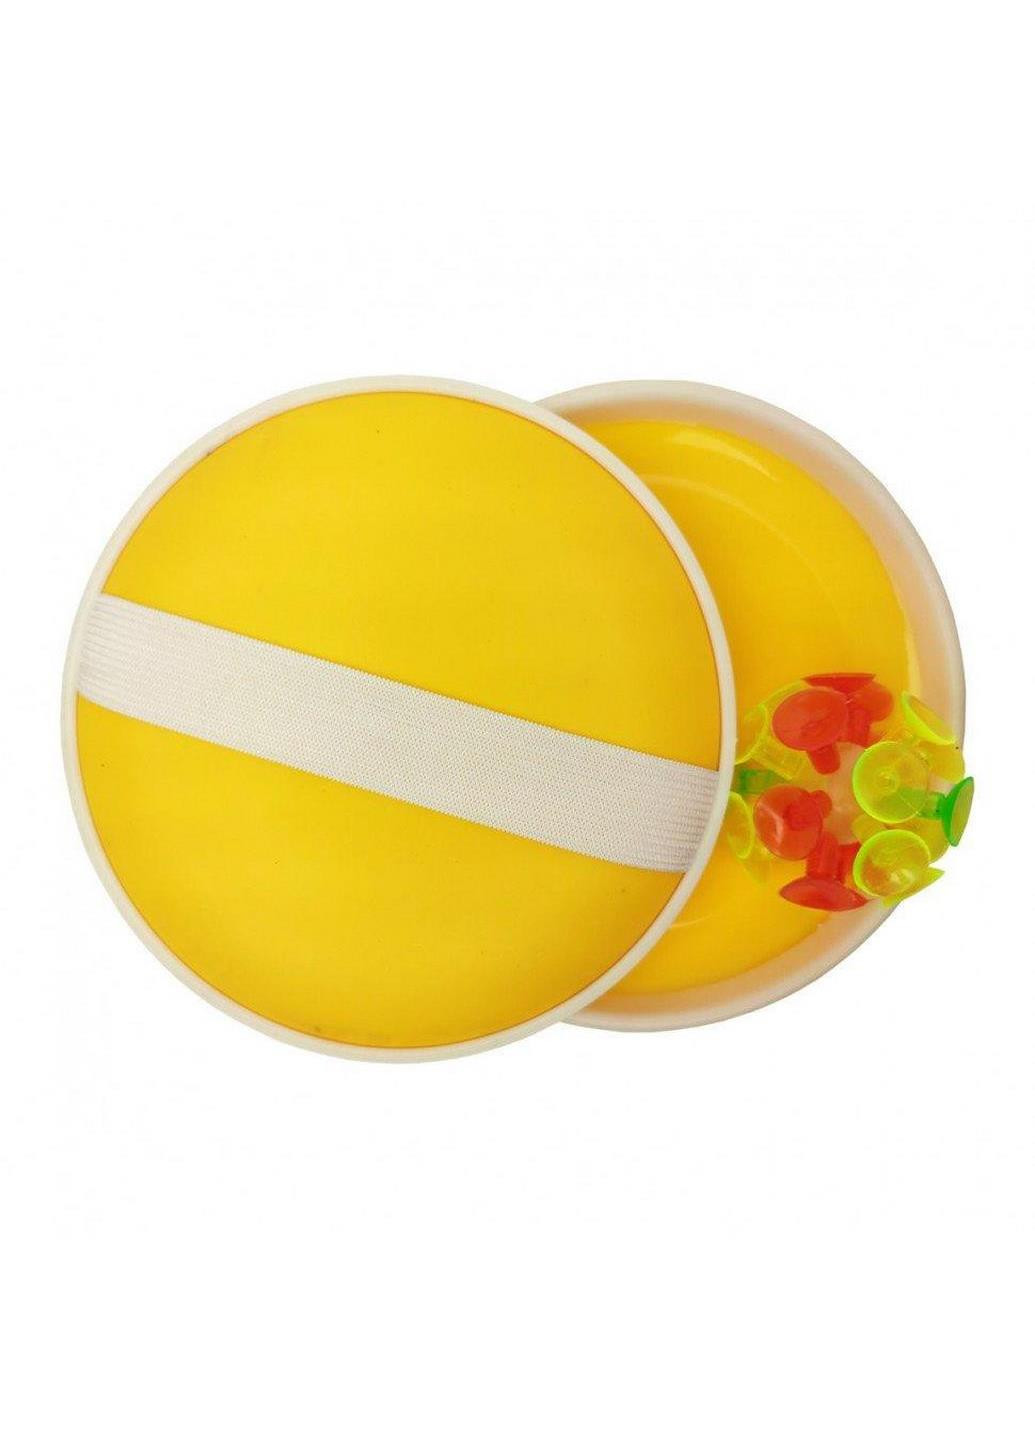 Детская игра "Ловушка" M 2872 мяч на присосках 15 см (Желтый) Metr+ (238105165)